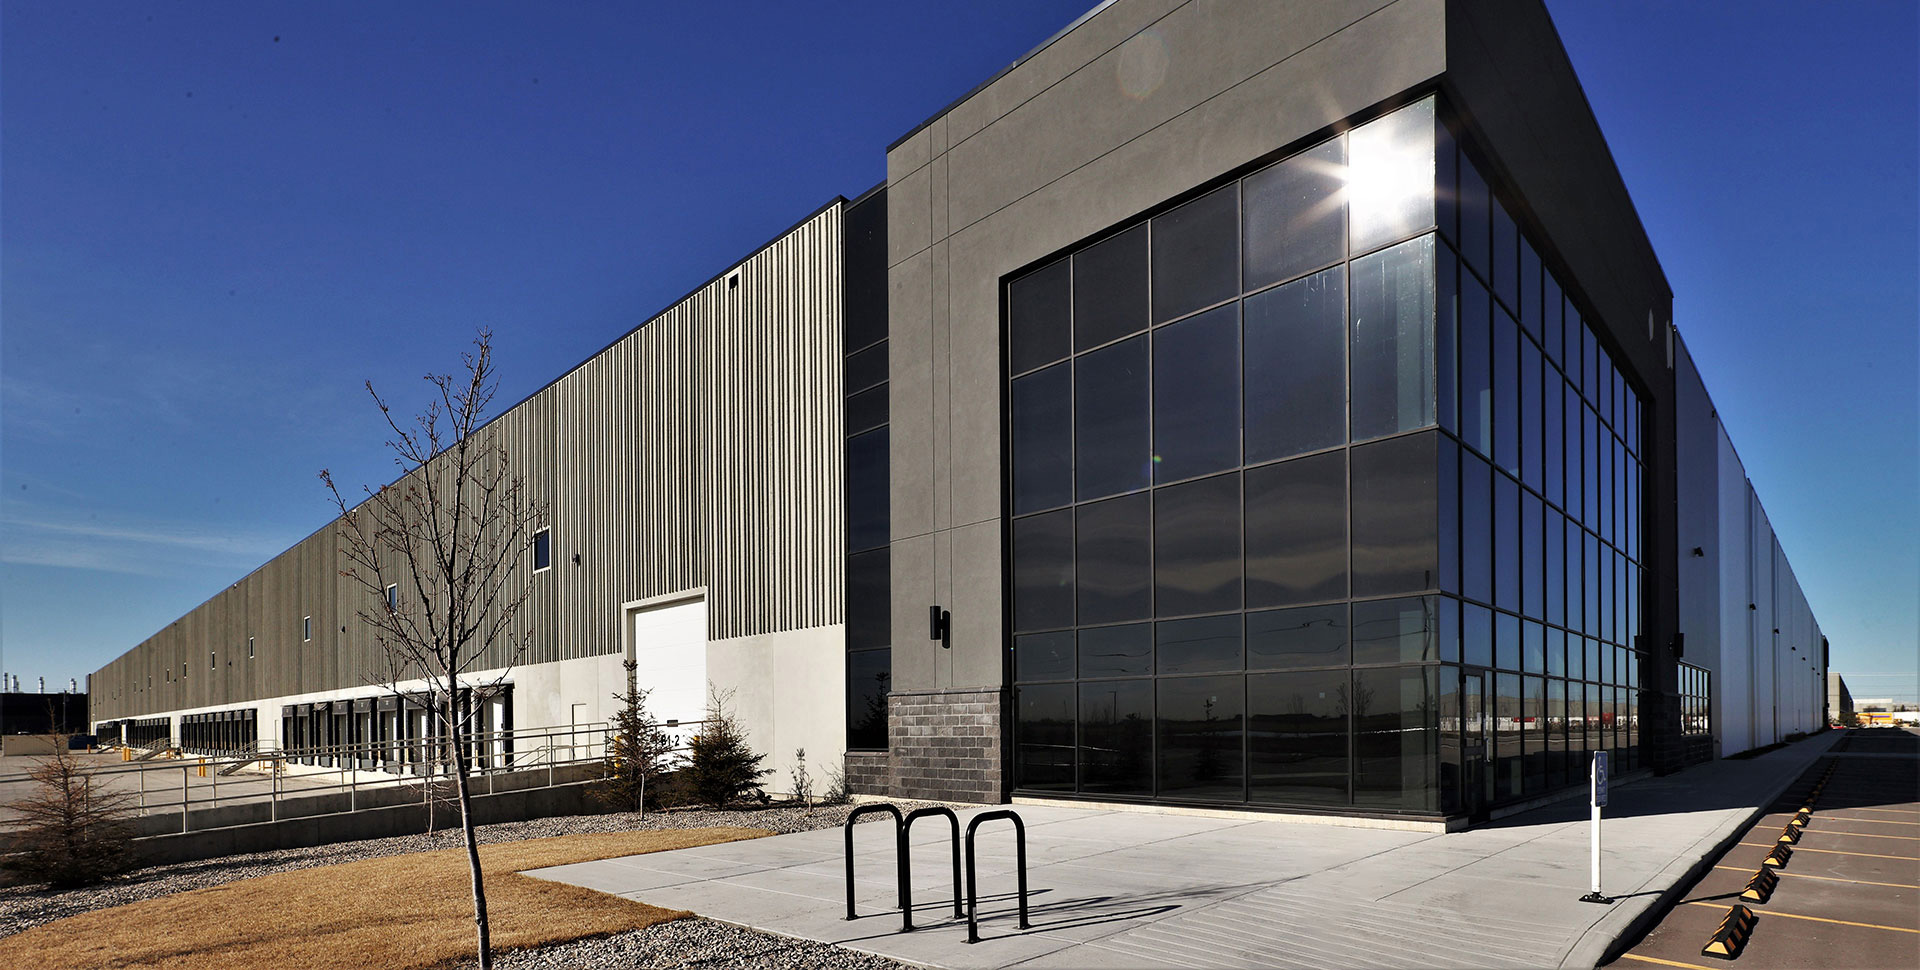 Skyline Industrial REIT Warehouse Investment